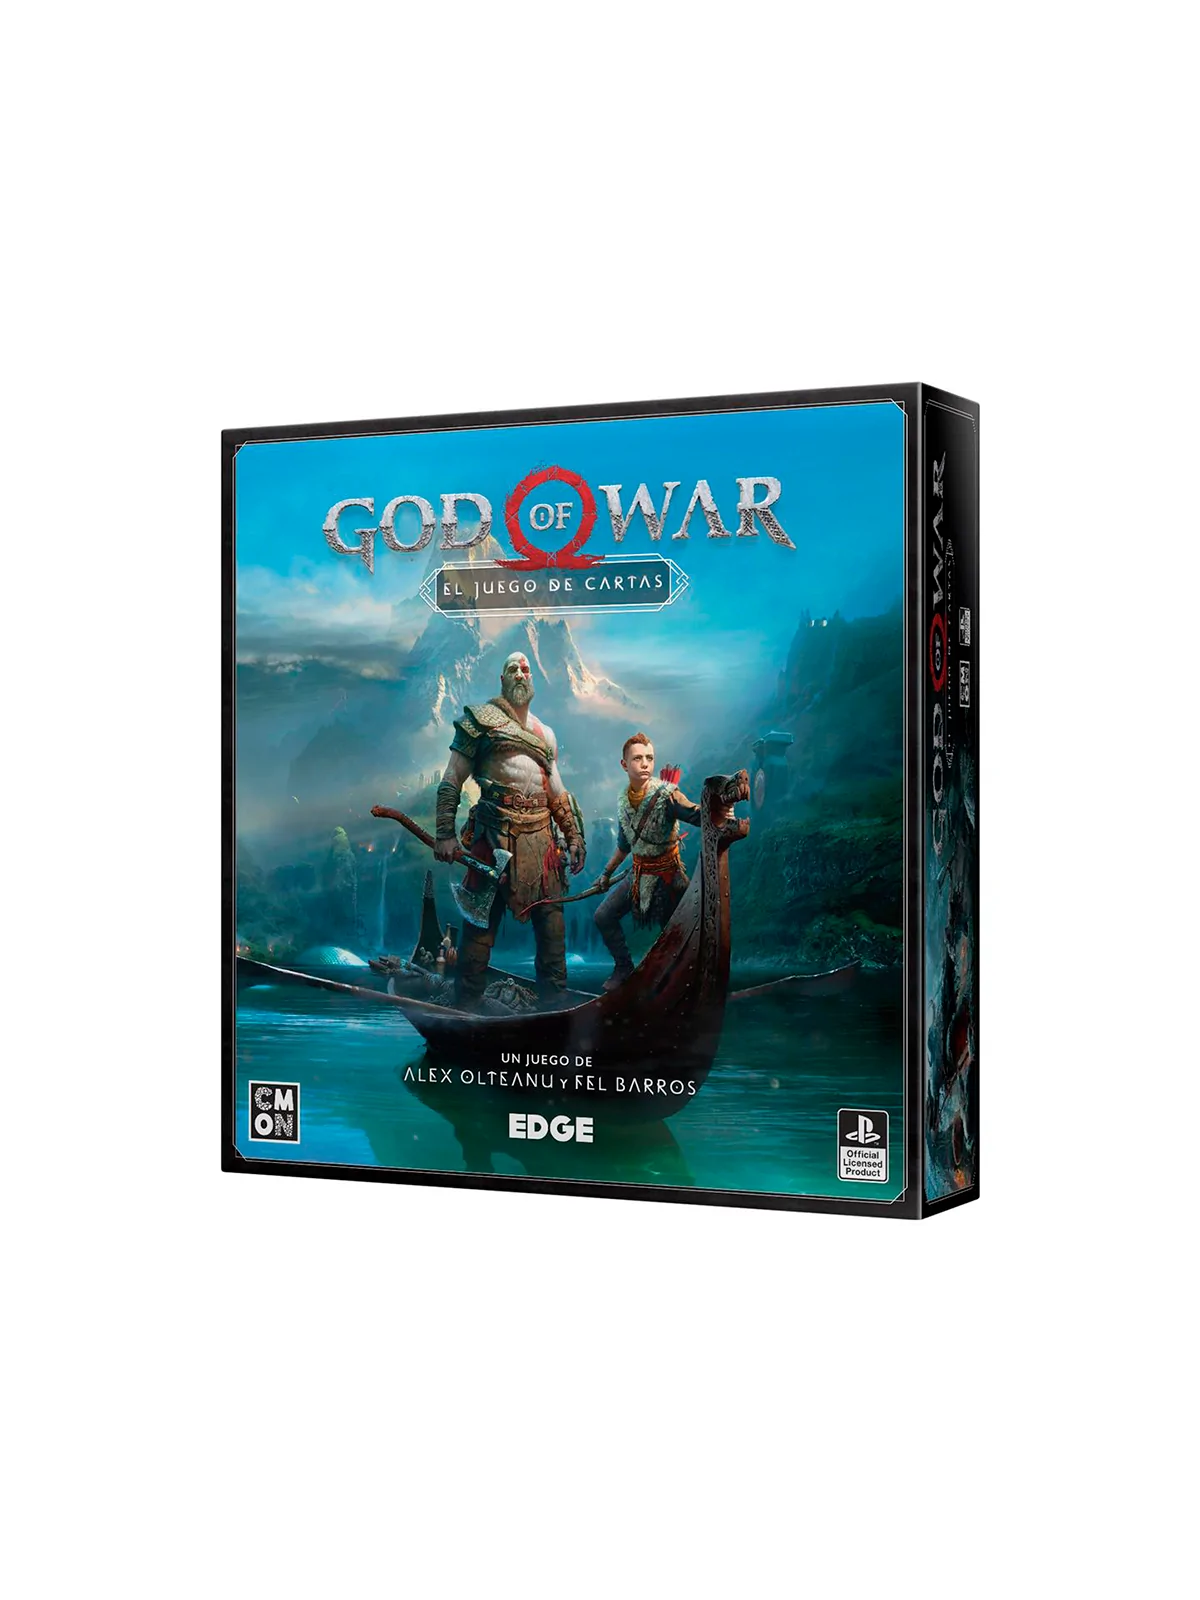 Comprar God of War barato al mejor precio 35,99 € de Edge